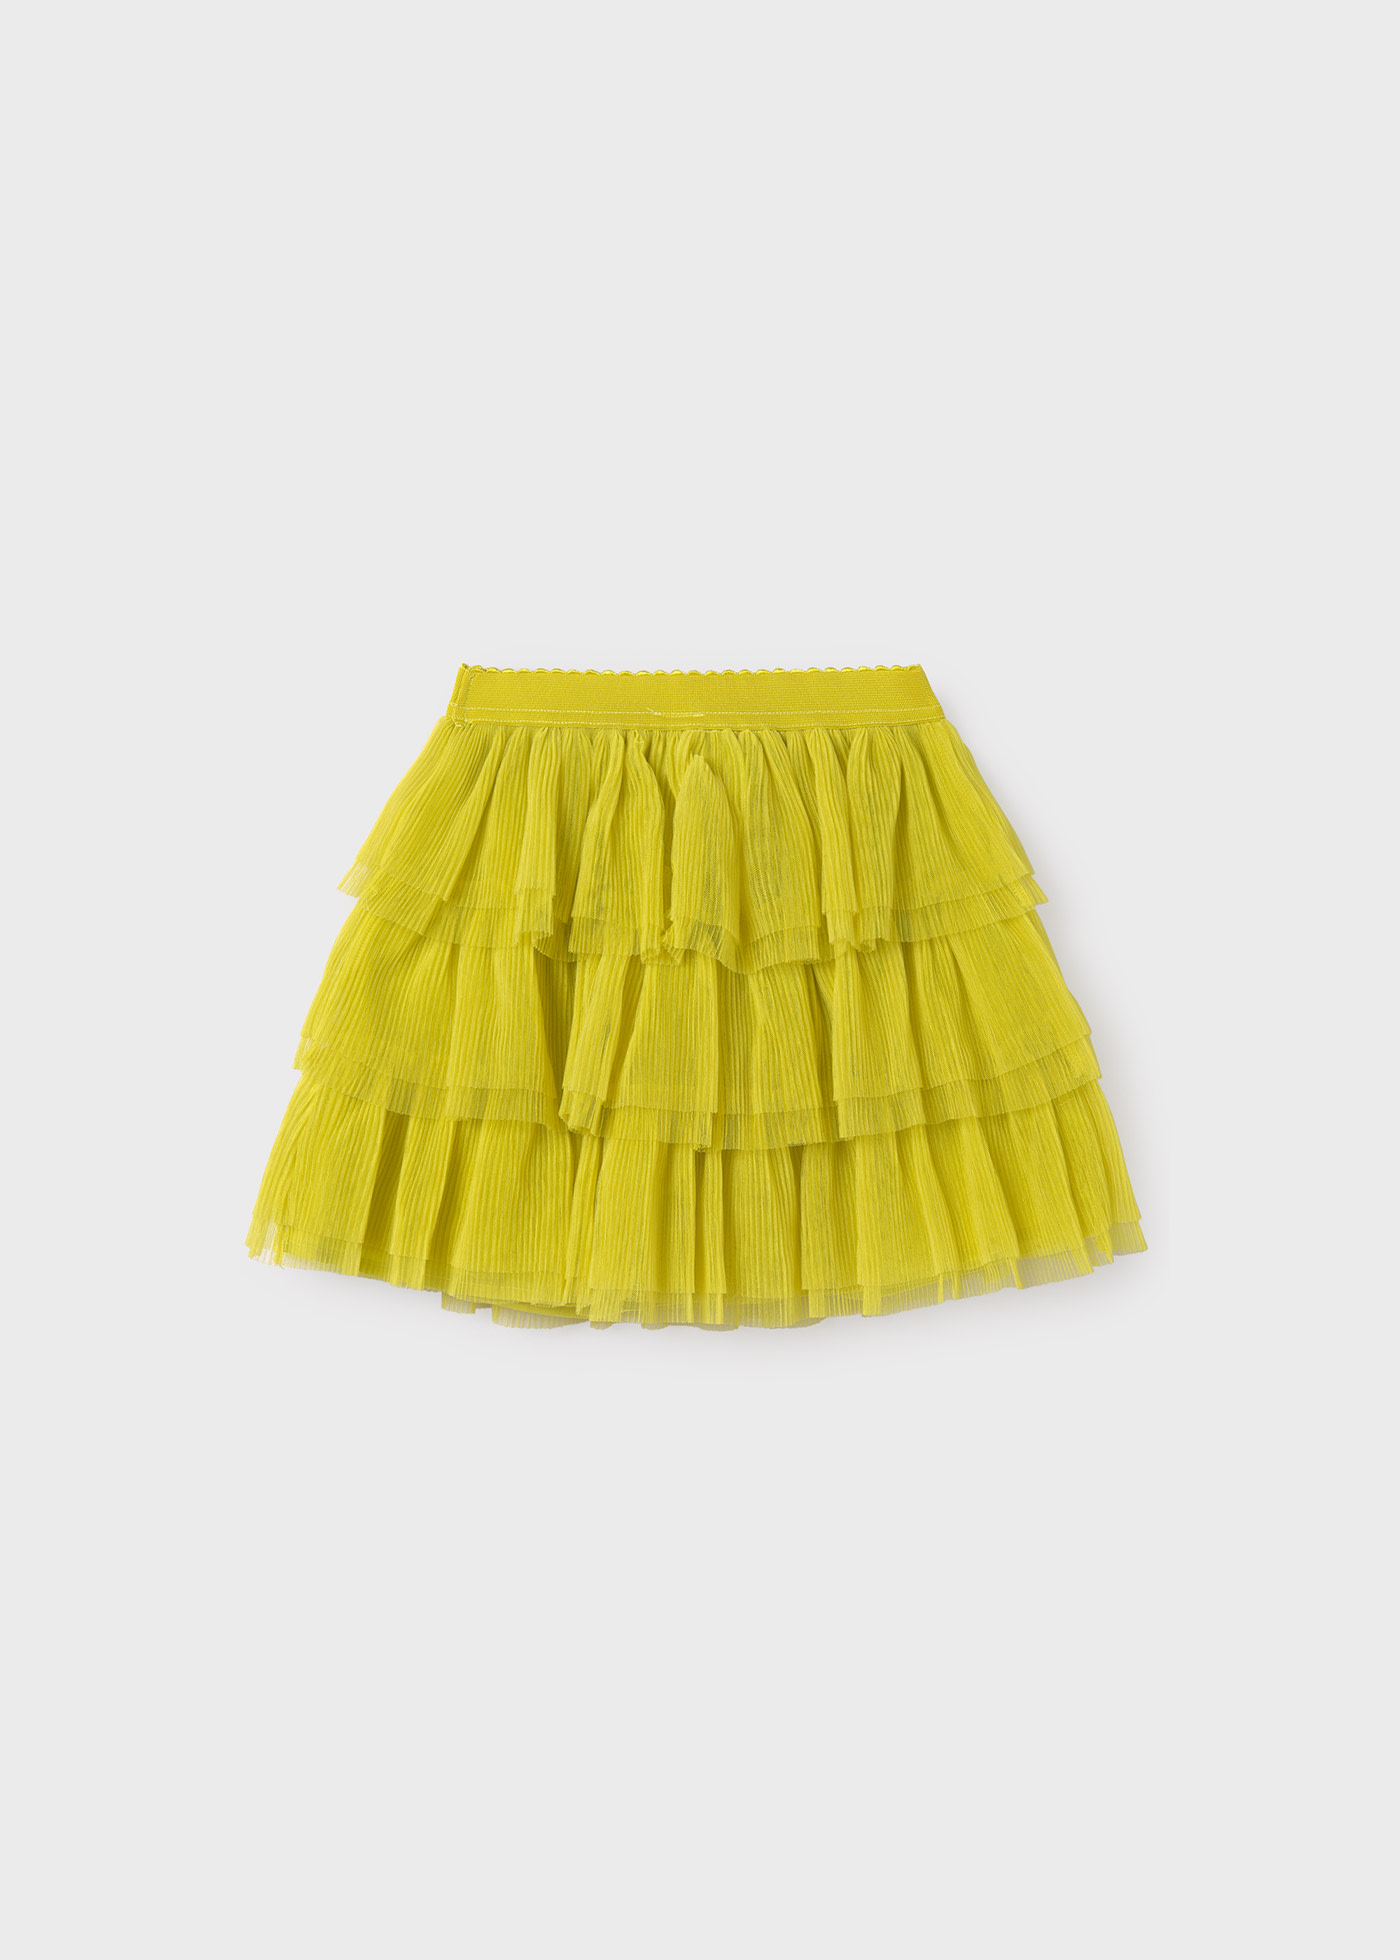 Girls tulle skirt